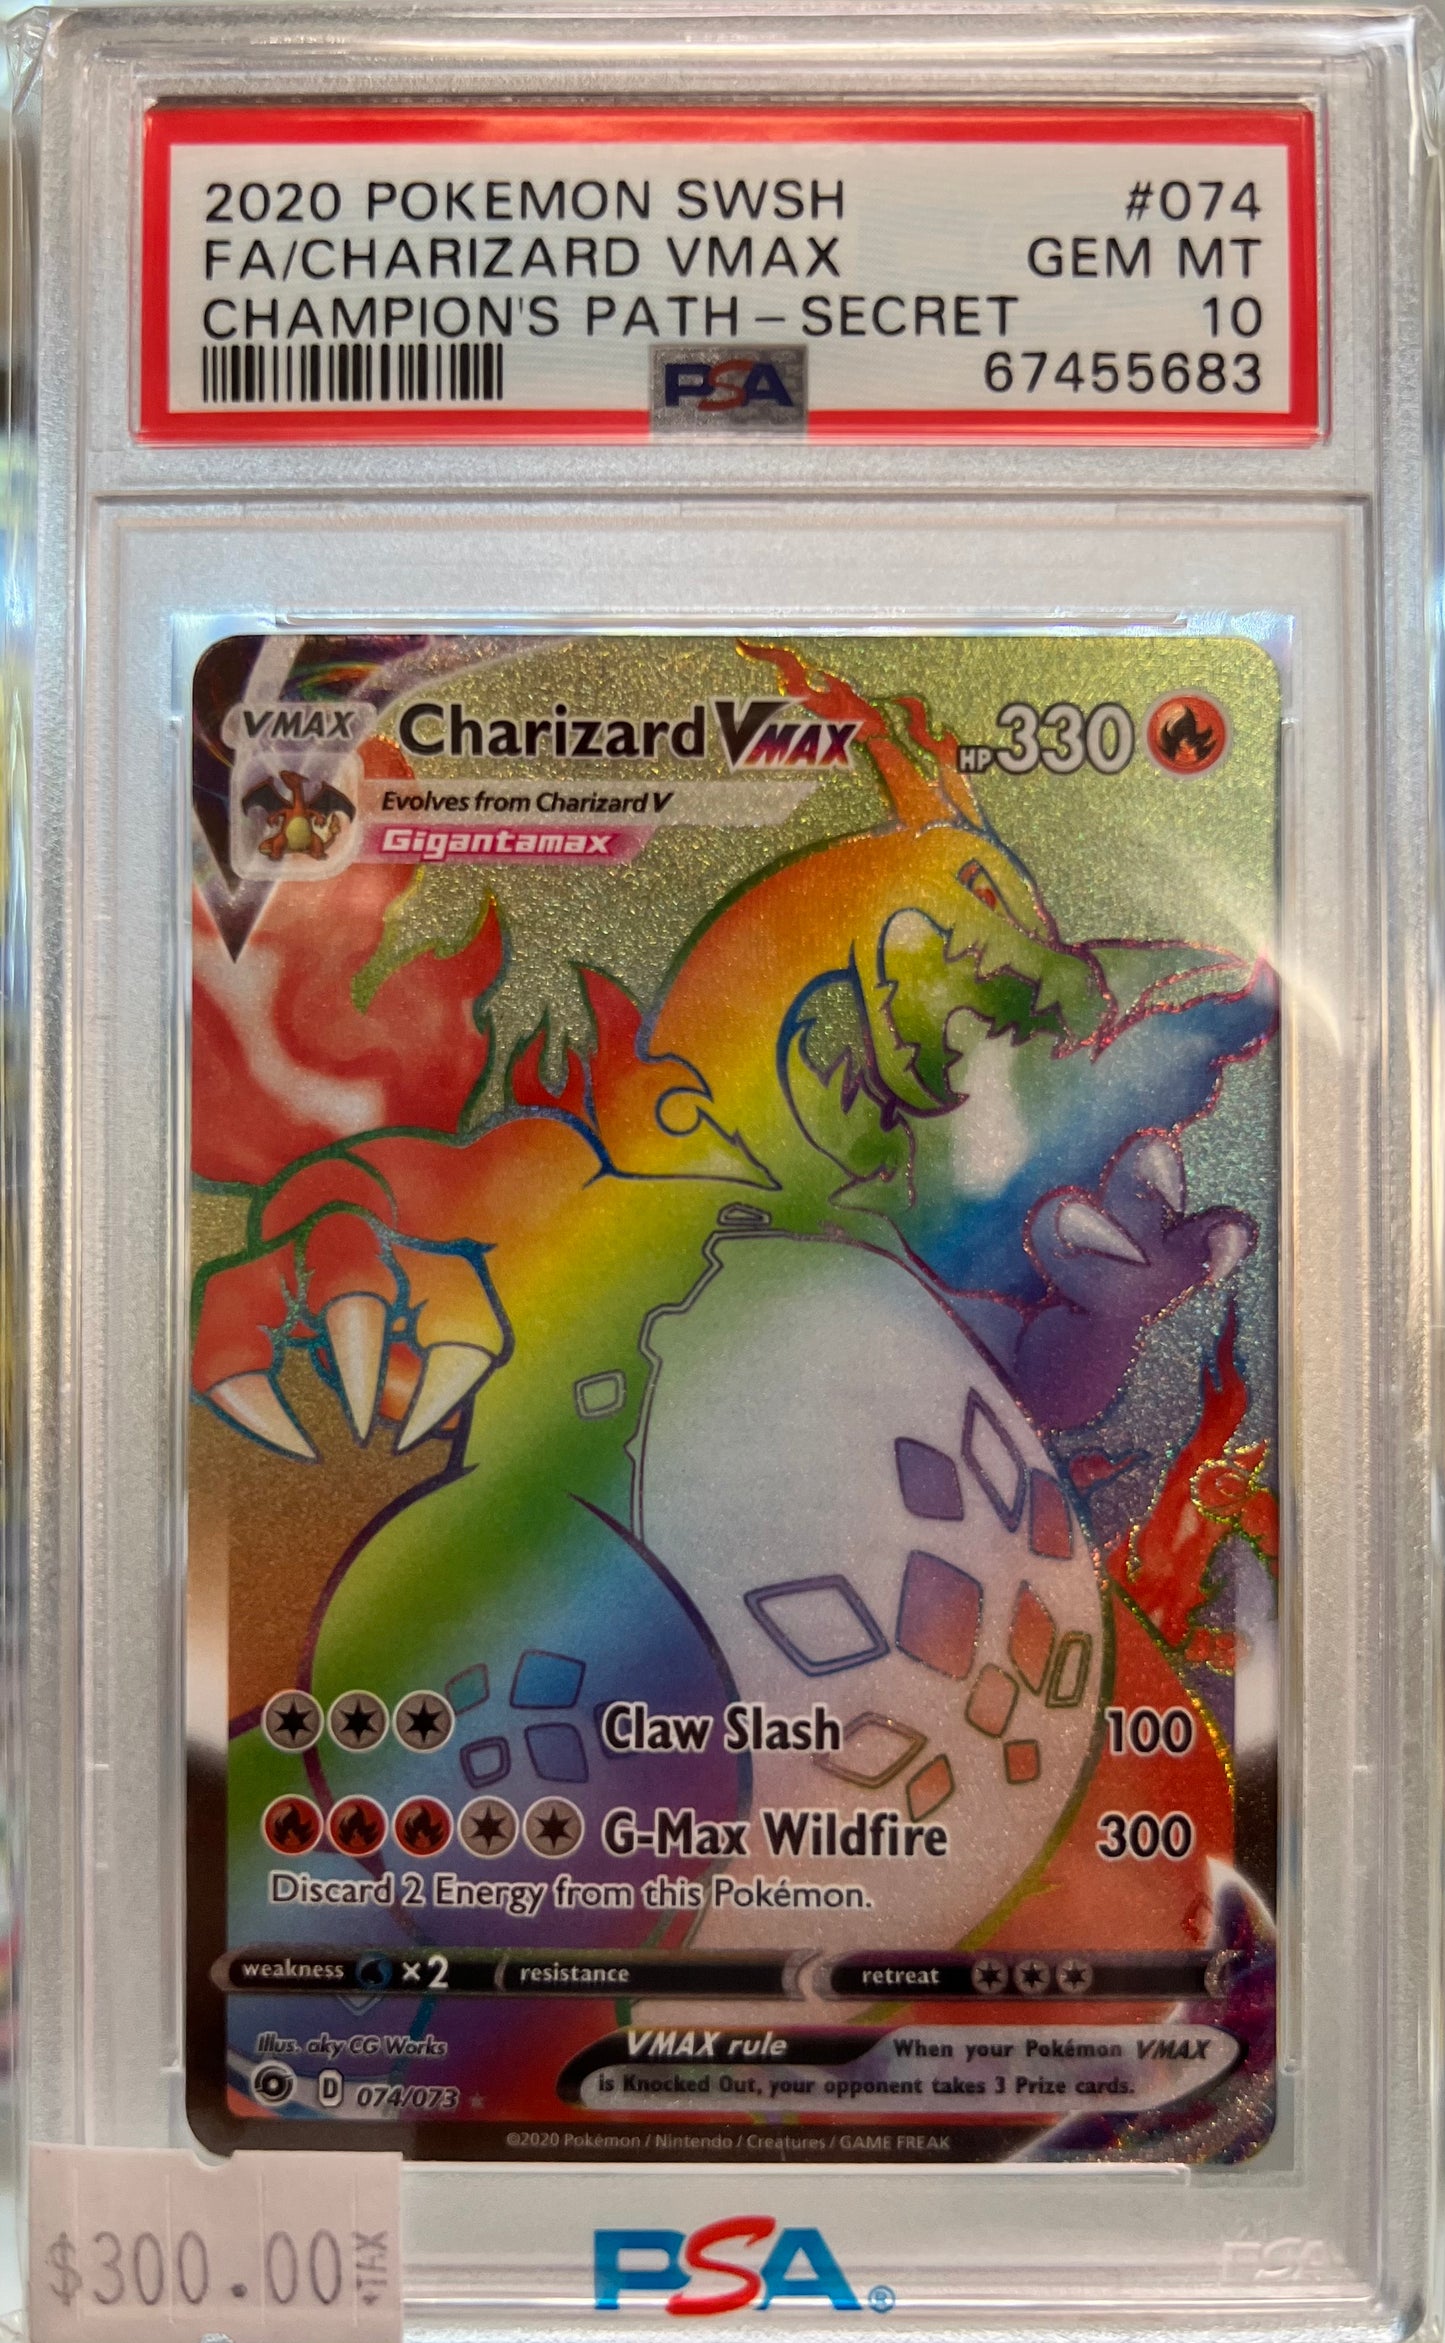 2020 Pokémon - Full art - Charizard VMAX Rainbow (#074) - Champion's Path - Secret - GEM MINT - PSA 10